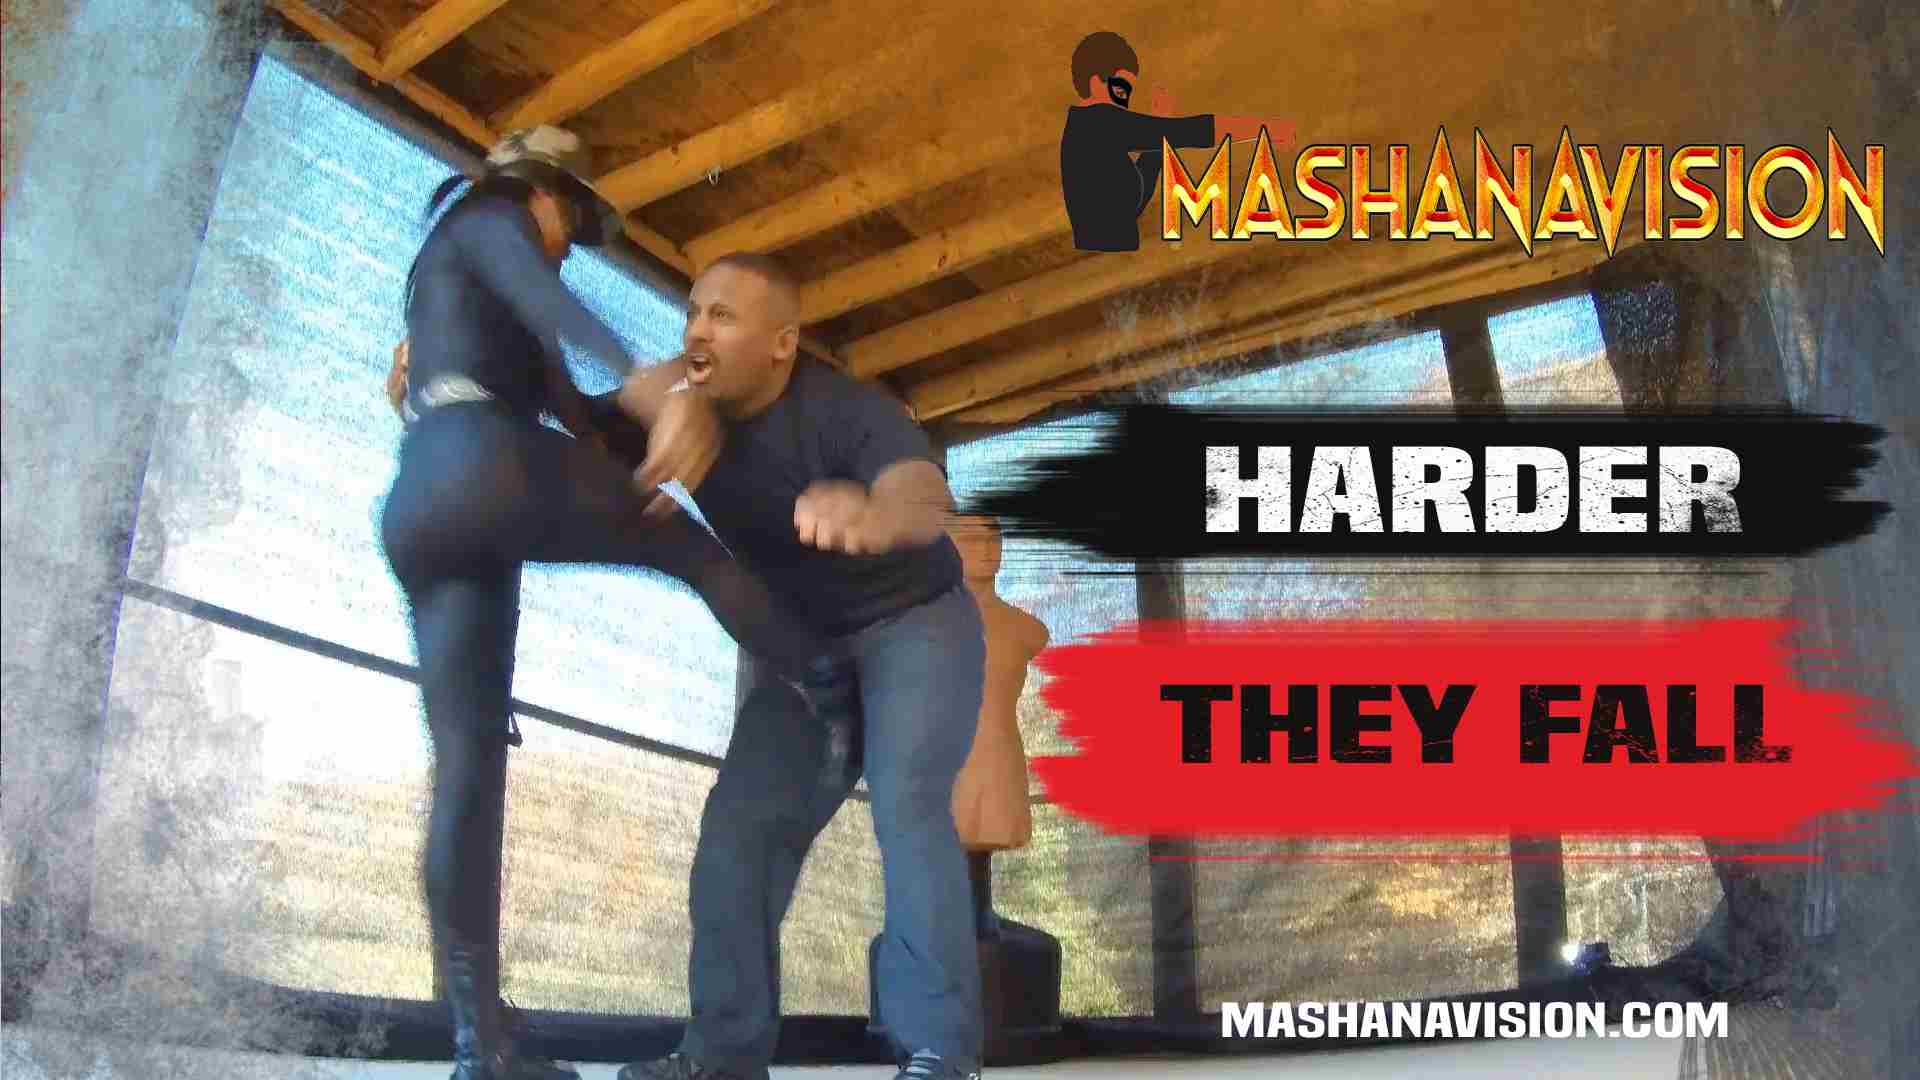 MashanaVision | Mashana Vision | Harder They Fall